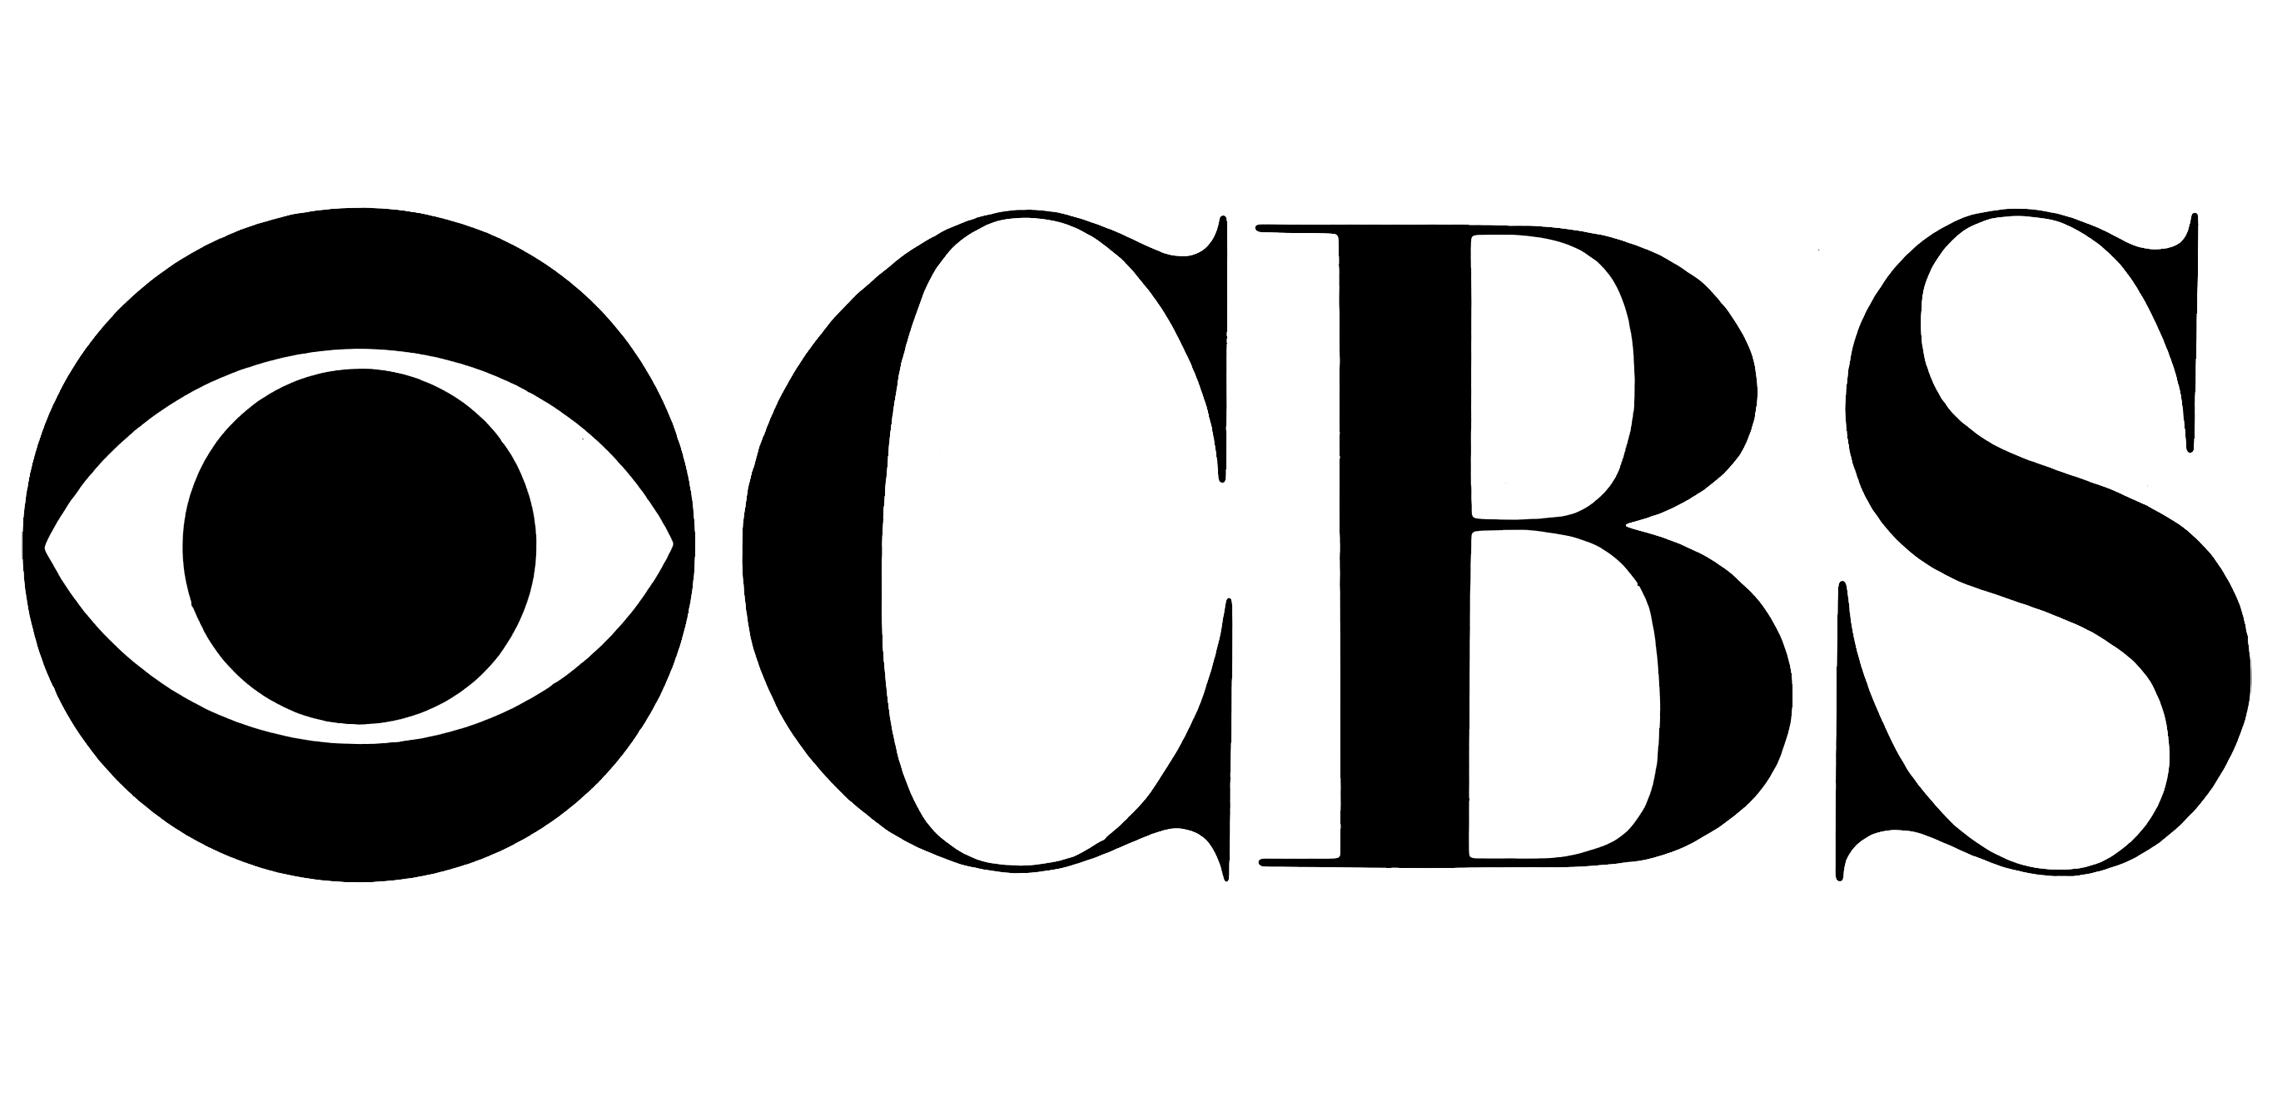 CBS-Logo.png